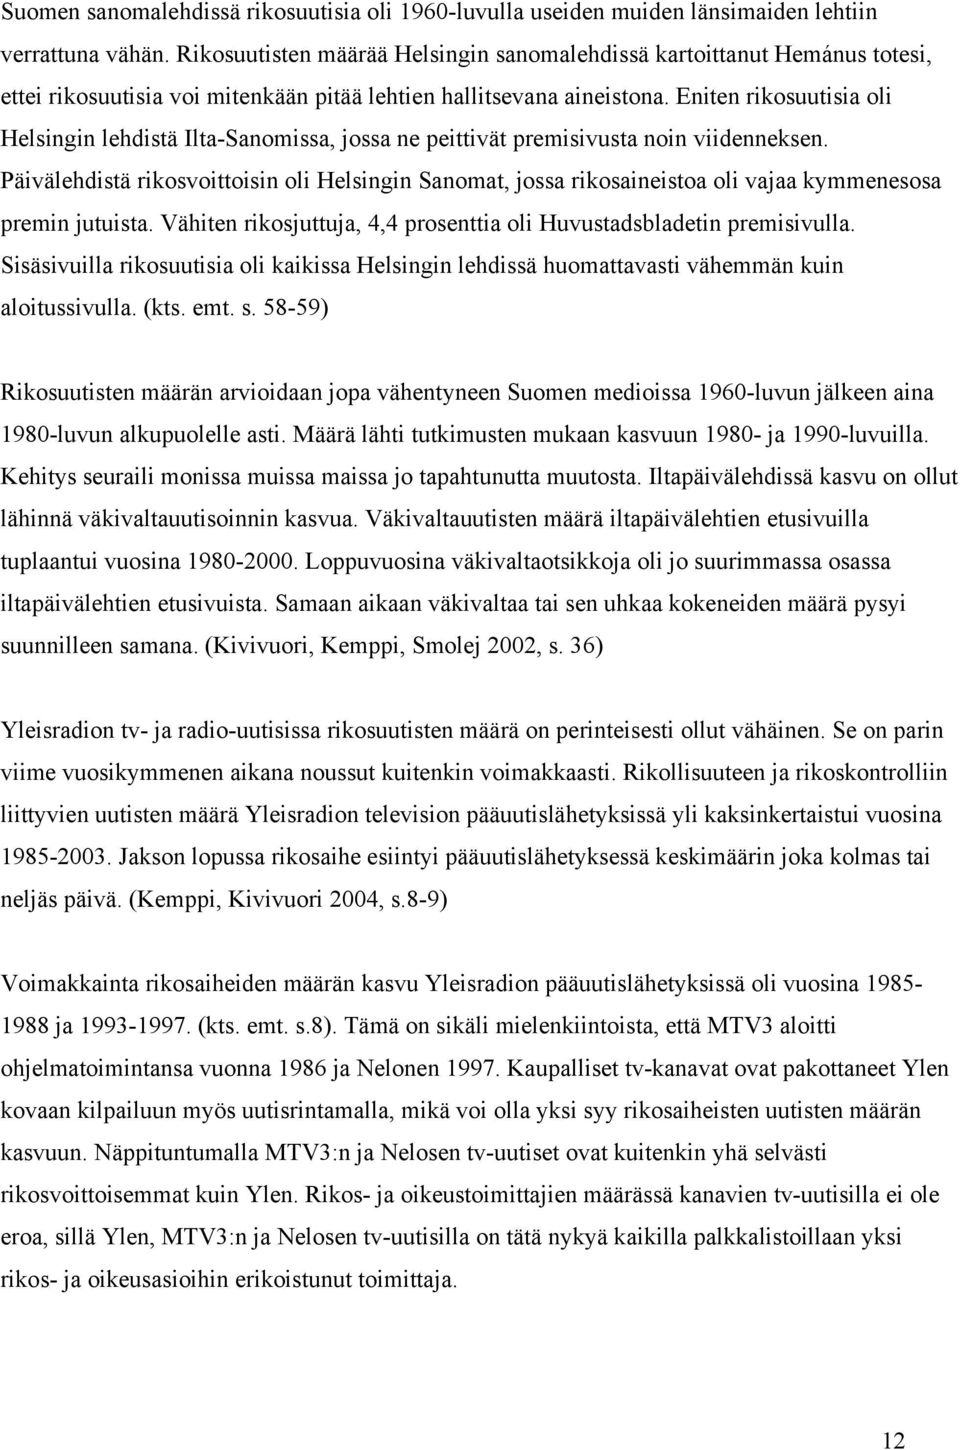 Eniten rikosuutisia oli Helsingin lehdistä Ilta-Sanomissa, jossa ne peittivät premisivusta noin viidenneksen.